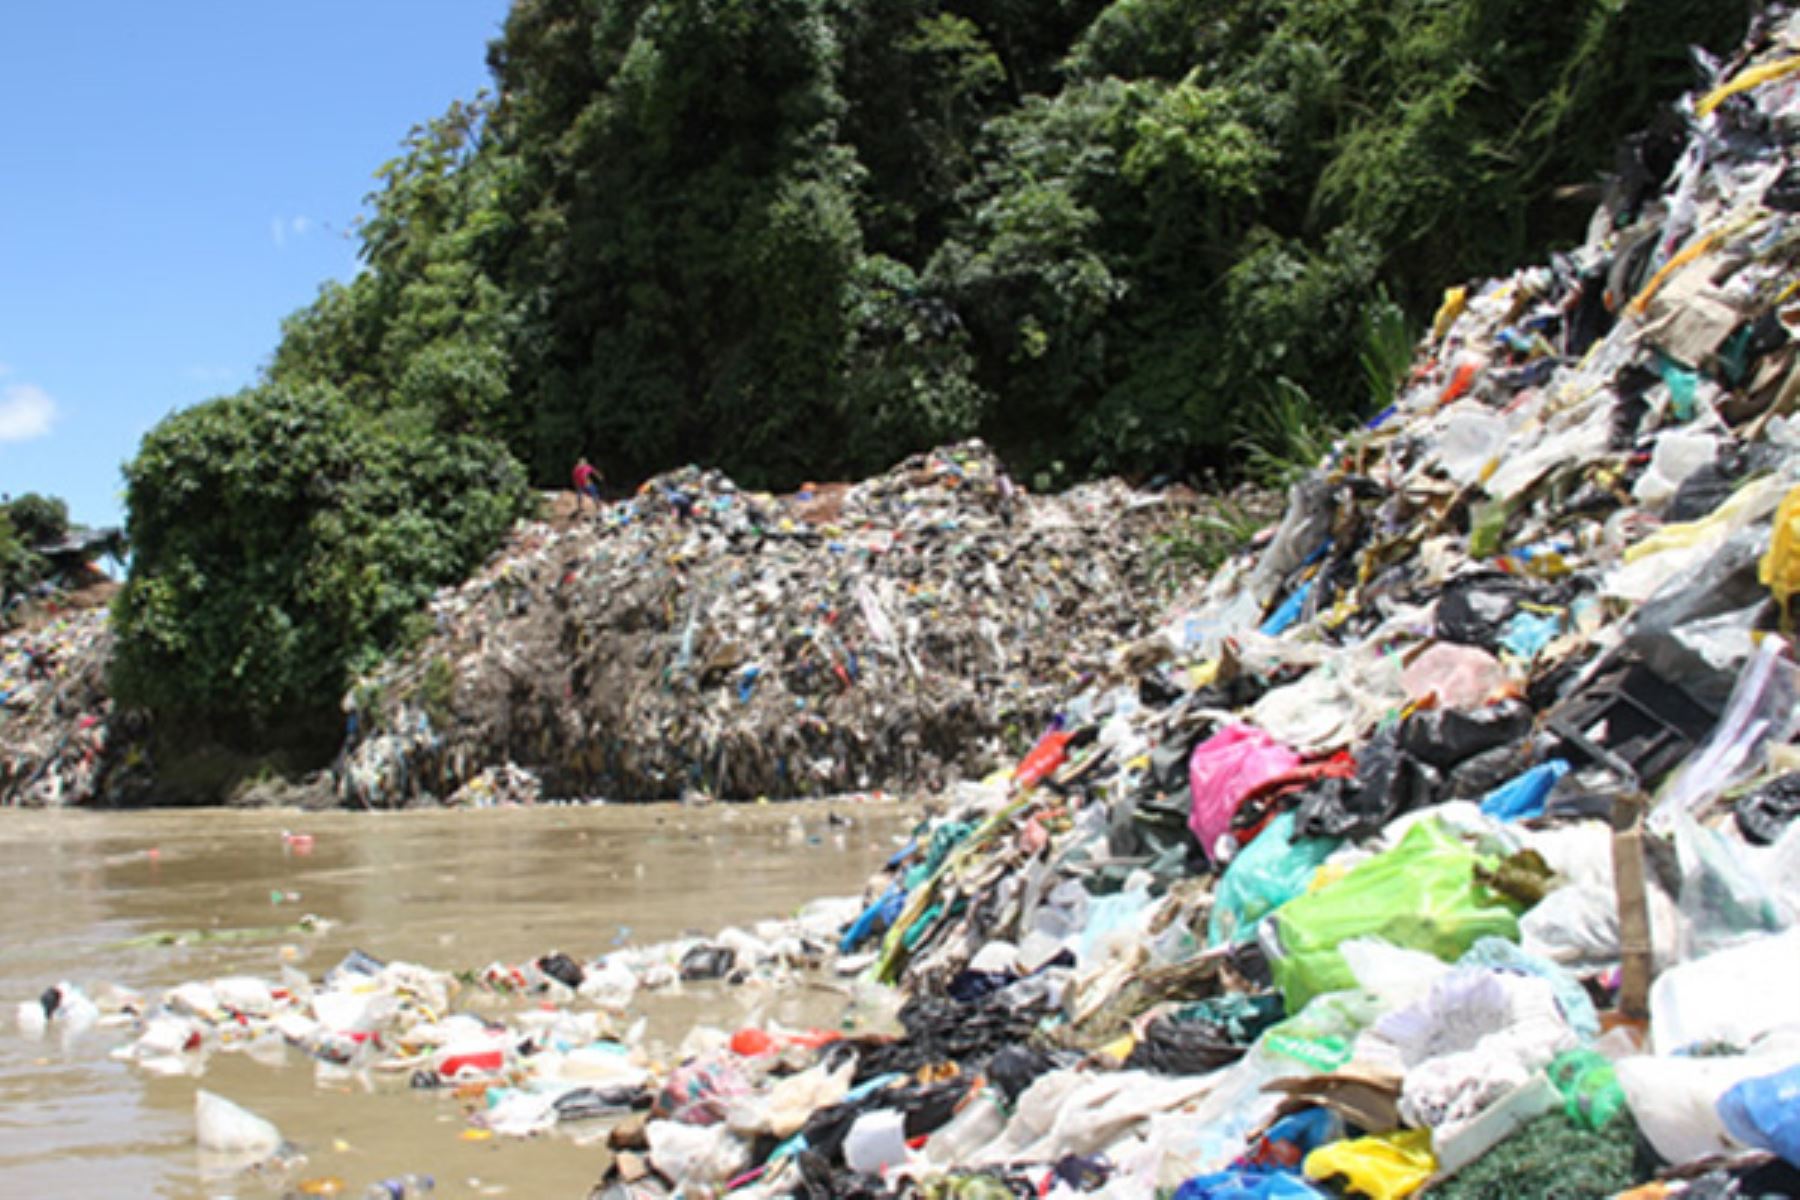 El Ministerio del Ambiente (Minam) declaró en emergencia, por un plazo de 60 días calendario, la gestión y manejo de los residuos sólidos en el distrito de Rupa Rupa, provincia de Leoncio Prado, departamento de Huánuco, debido a una inadecuada disposición de los residuos en el botadero municipal “La Muyuna”, lo que ocasiona impactos negativos en el río Huallaga y sus alrededores.